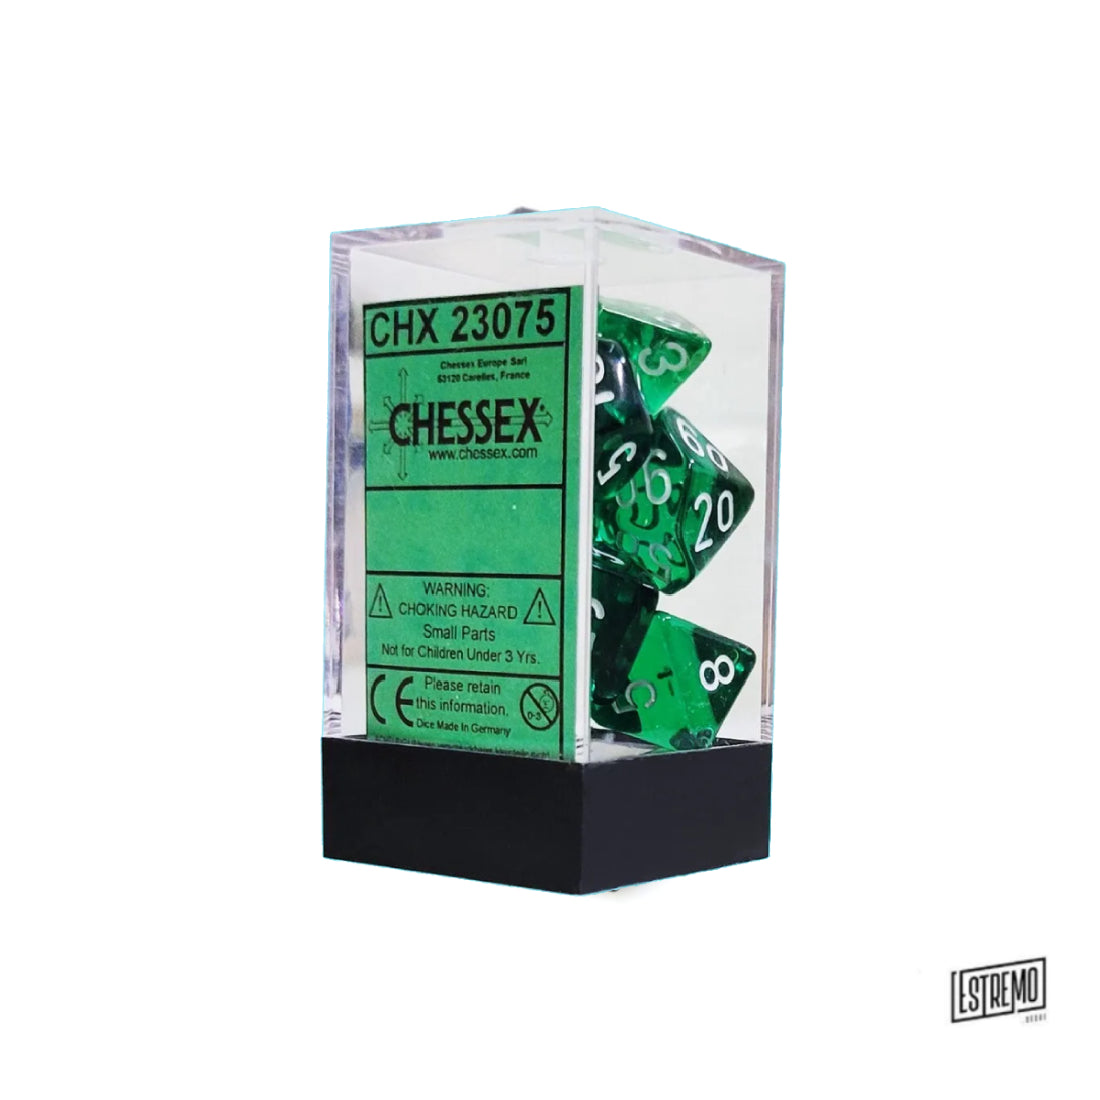 Chessex Set da 7 Dadi Trasparenti Colore Green/White